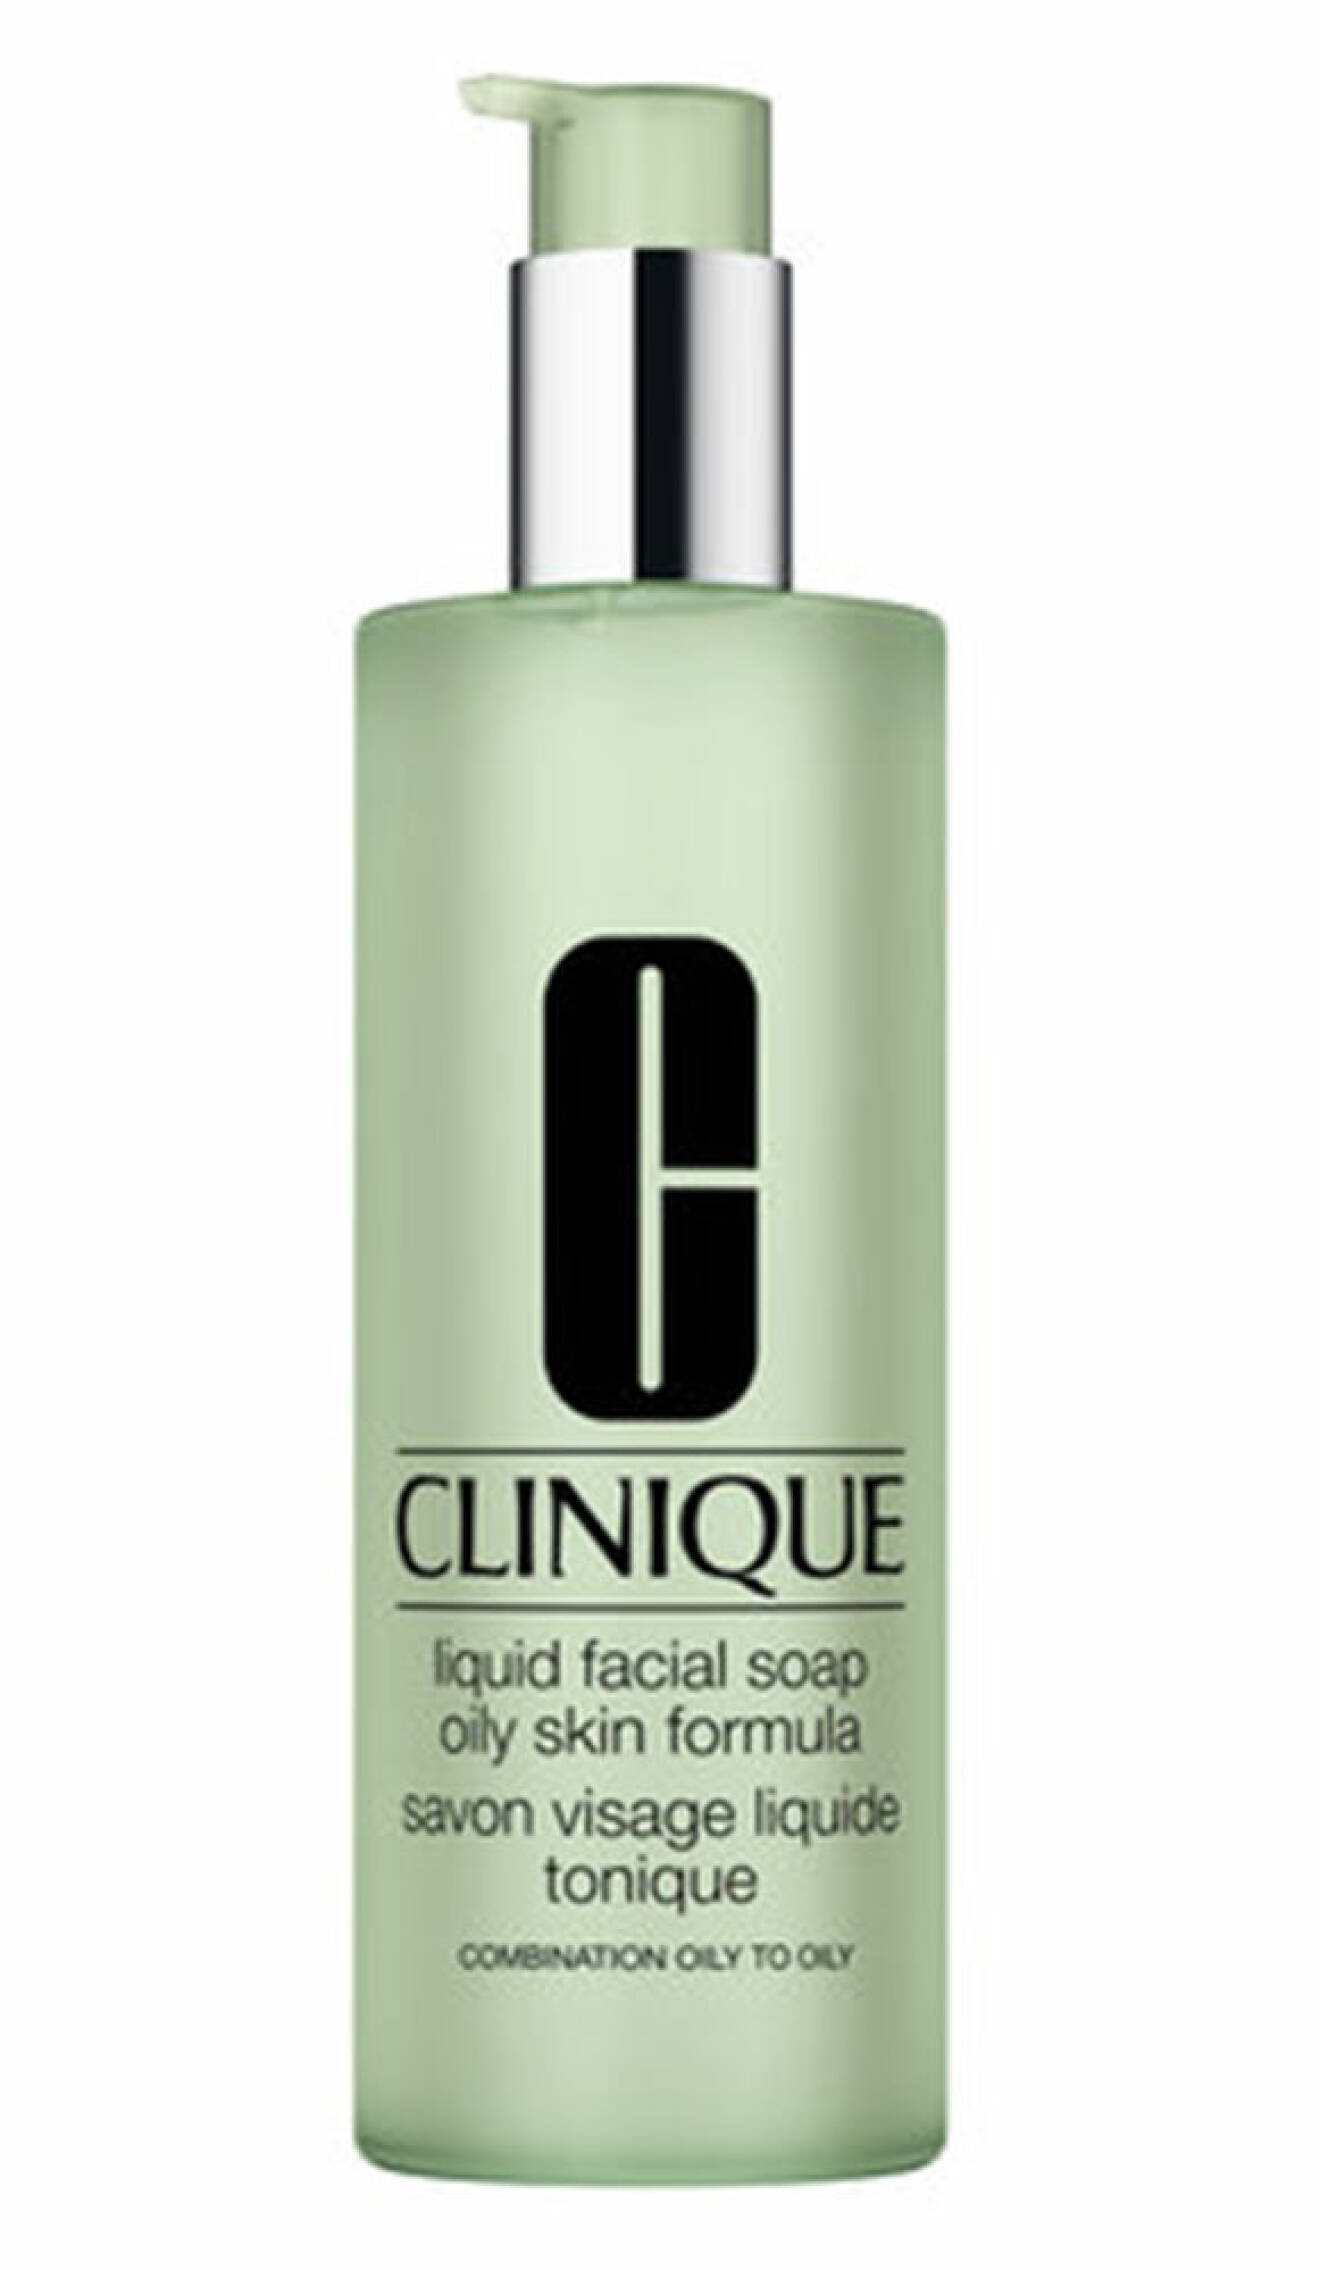 liquid facial soap clinique